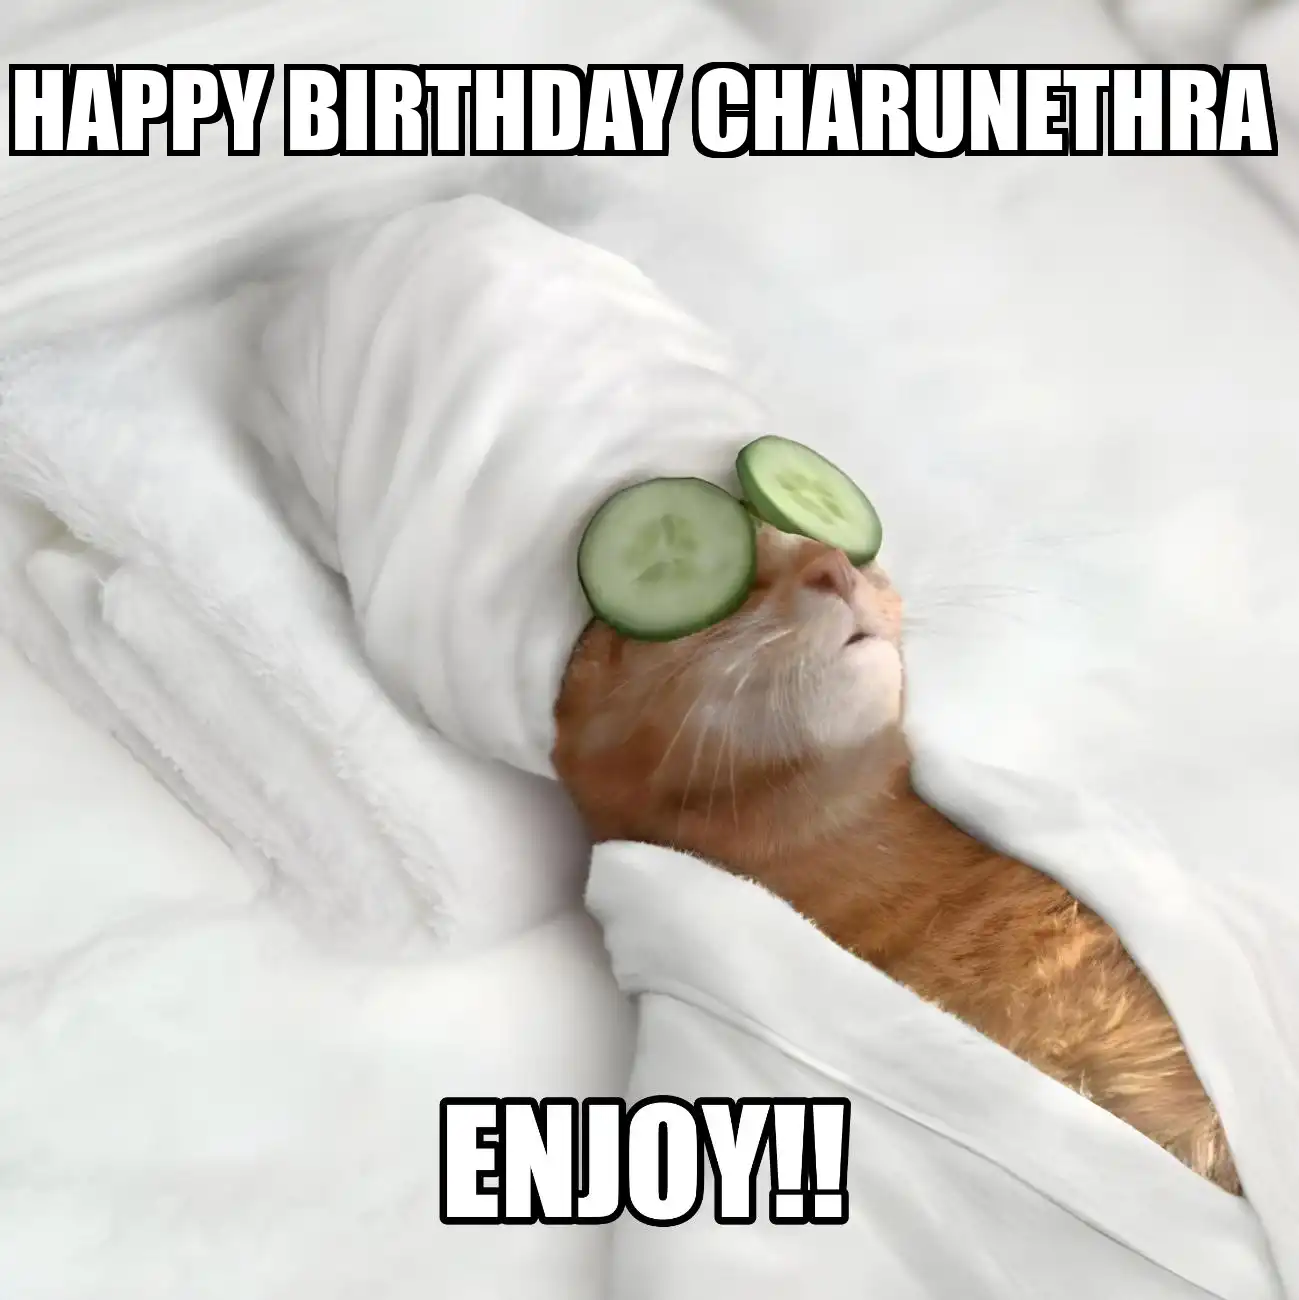 Happy Birthday Charunethra Enjoy Cat Meme